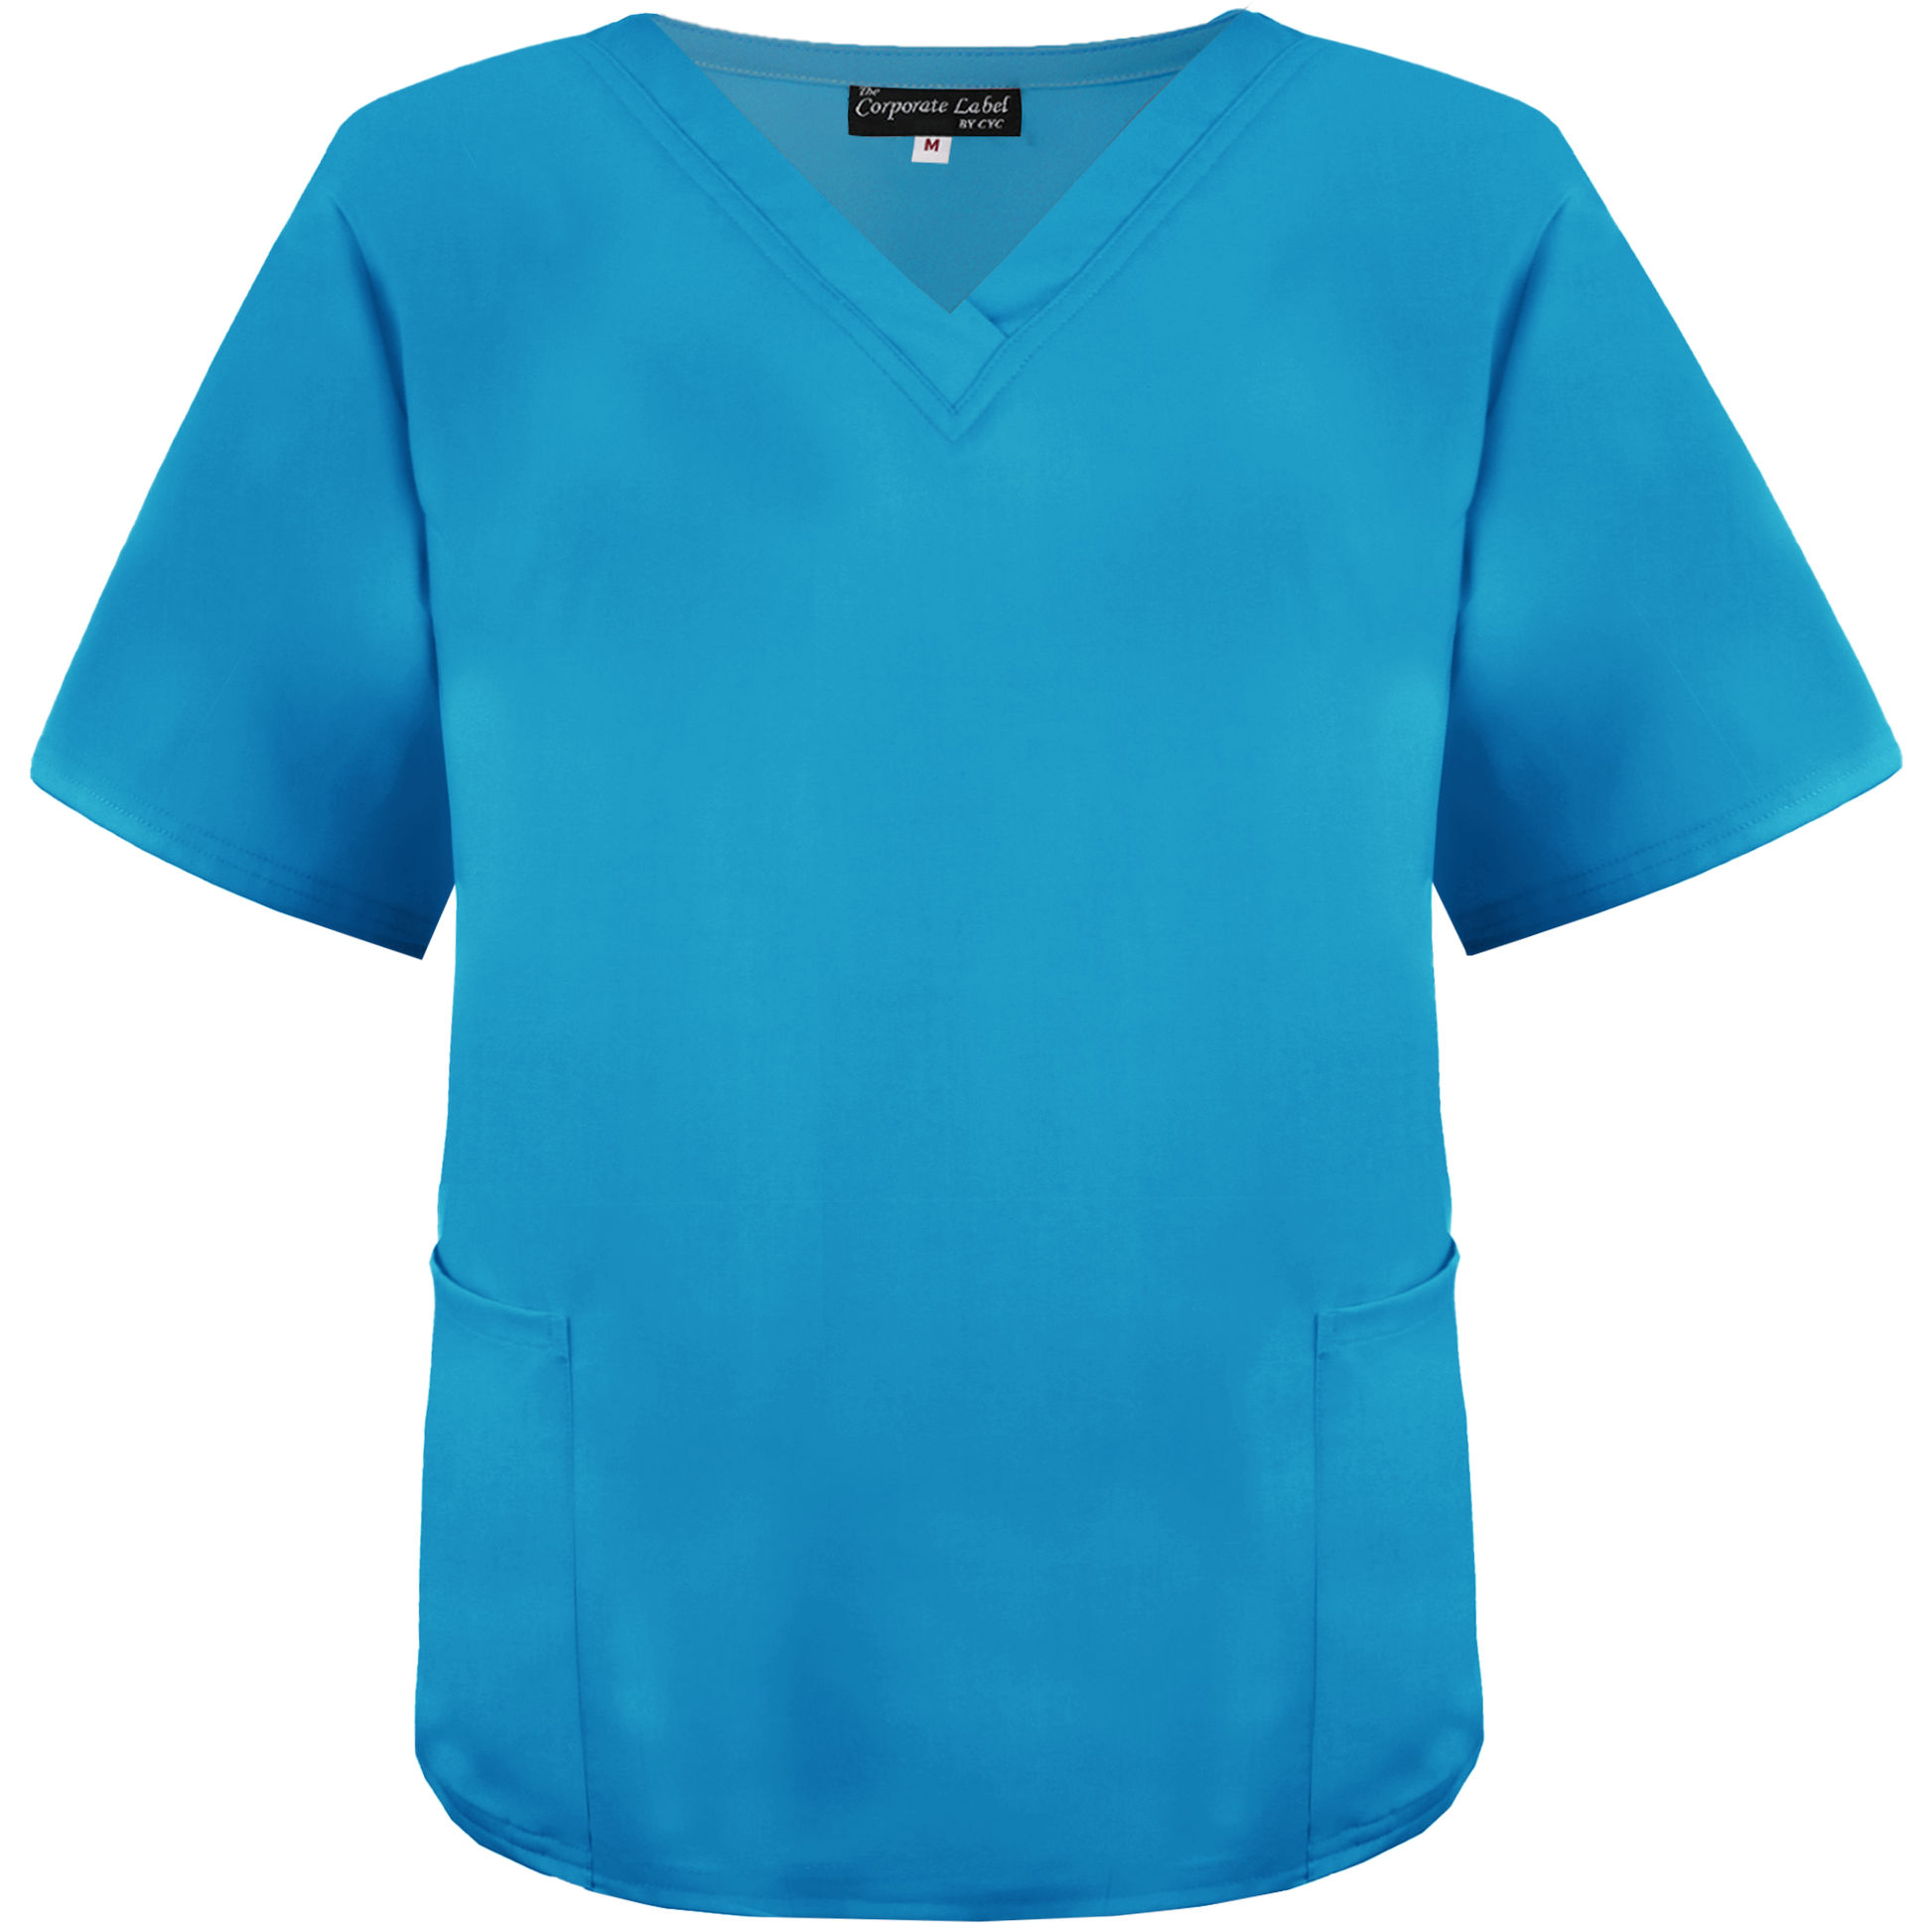 Blue Medical Staff Scrub Top — Hospital amd Clinic Uniforms by CYC